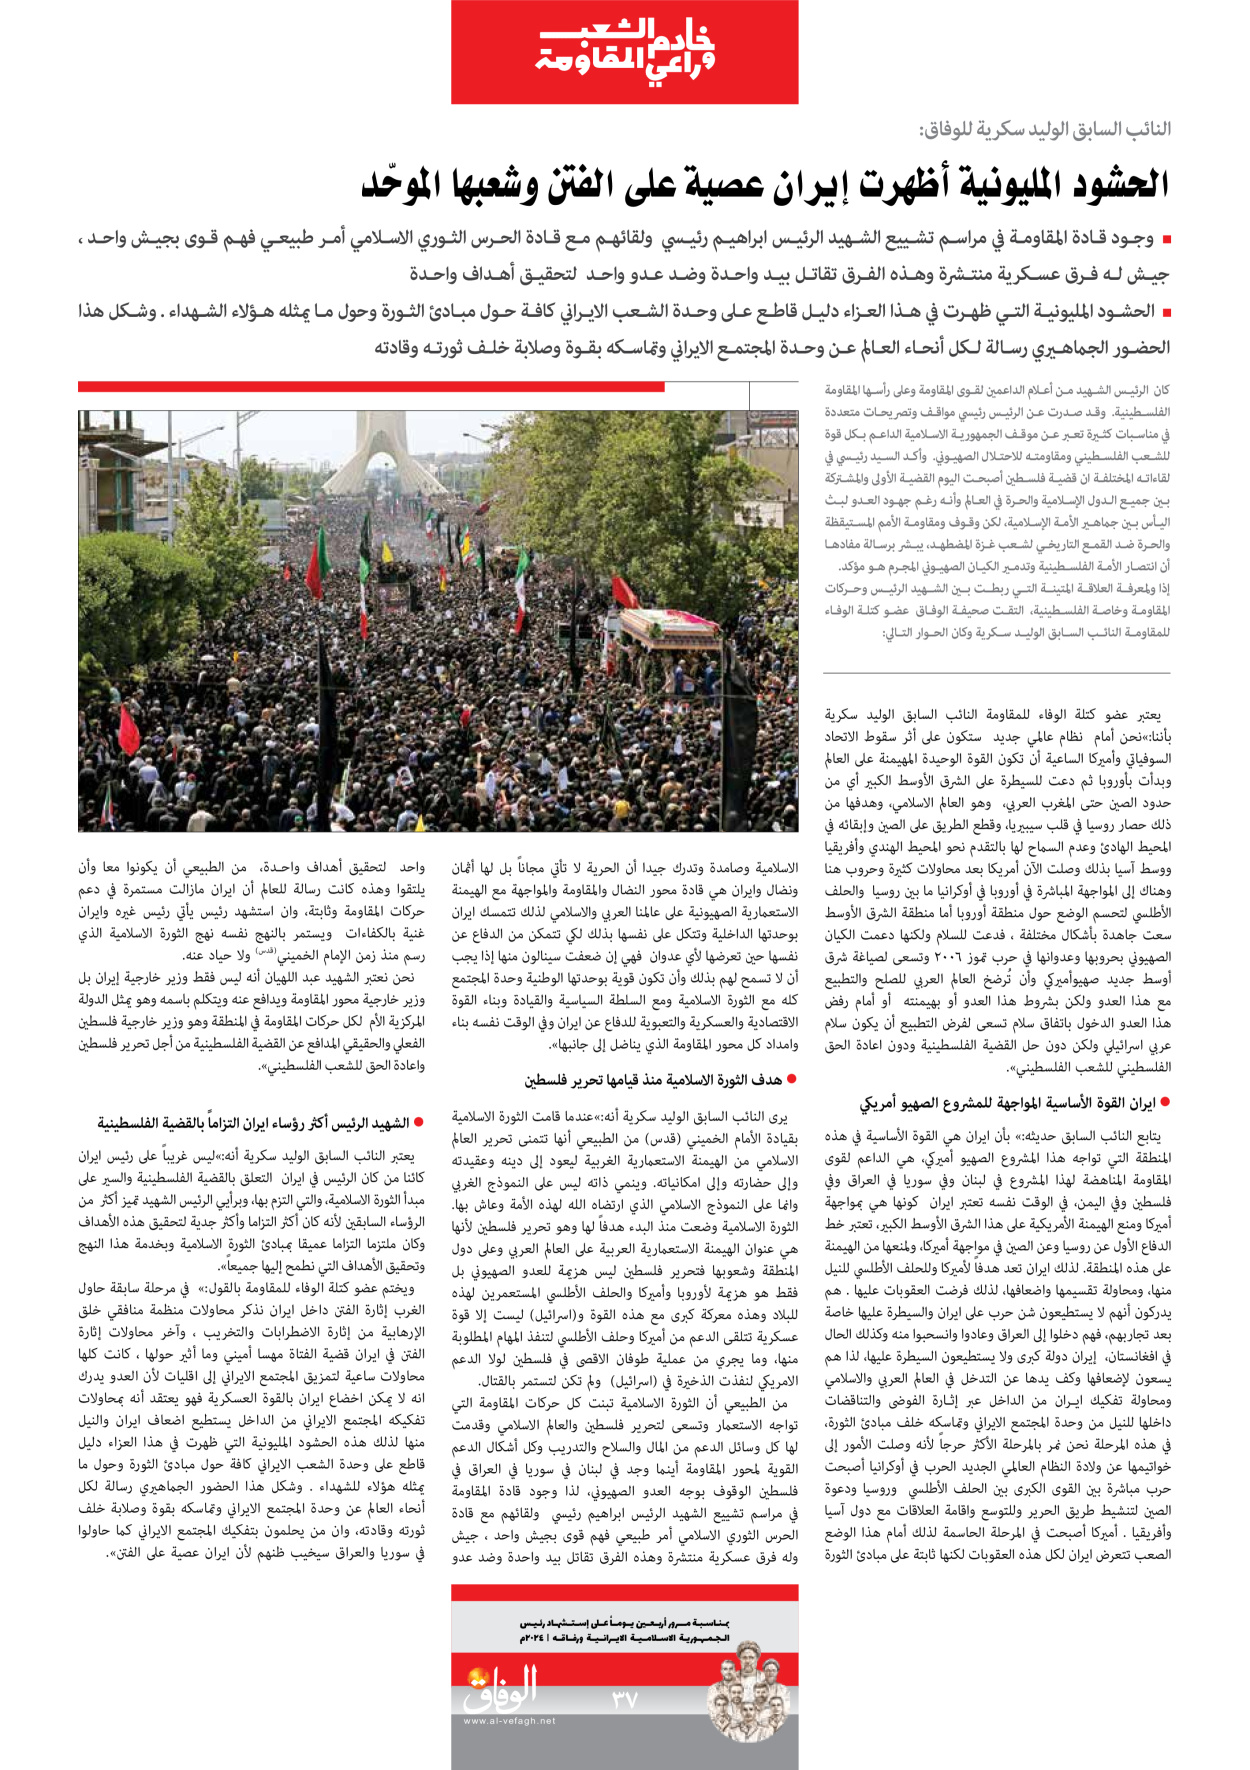 صحیفة ایران الدولیة الوفاق - ملحق ویژه نامه چهلم شهید رییسی - ٢٩ يونيو ٢٠٢٤ - الصفحة ۳۷